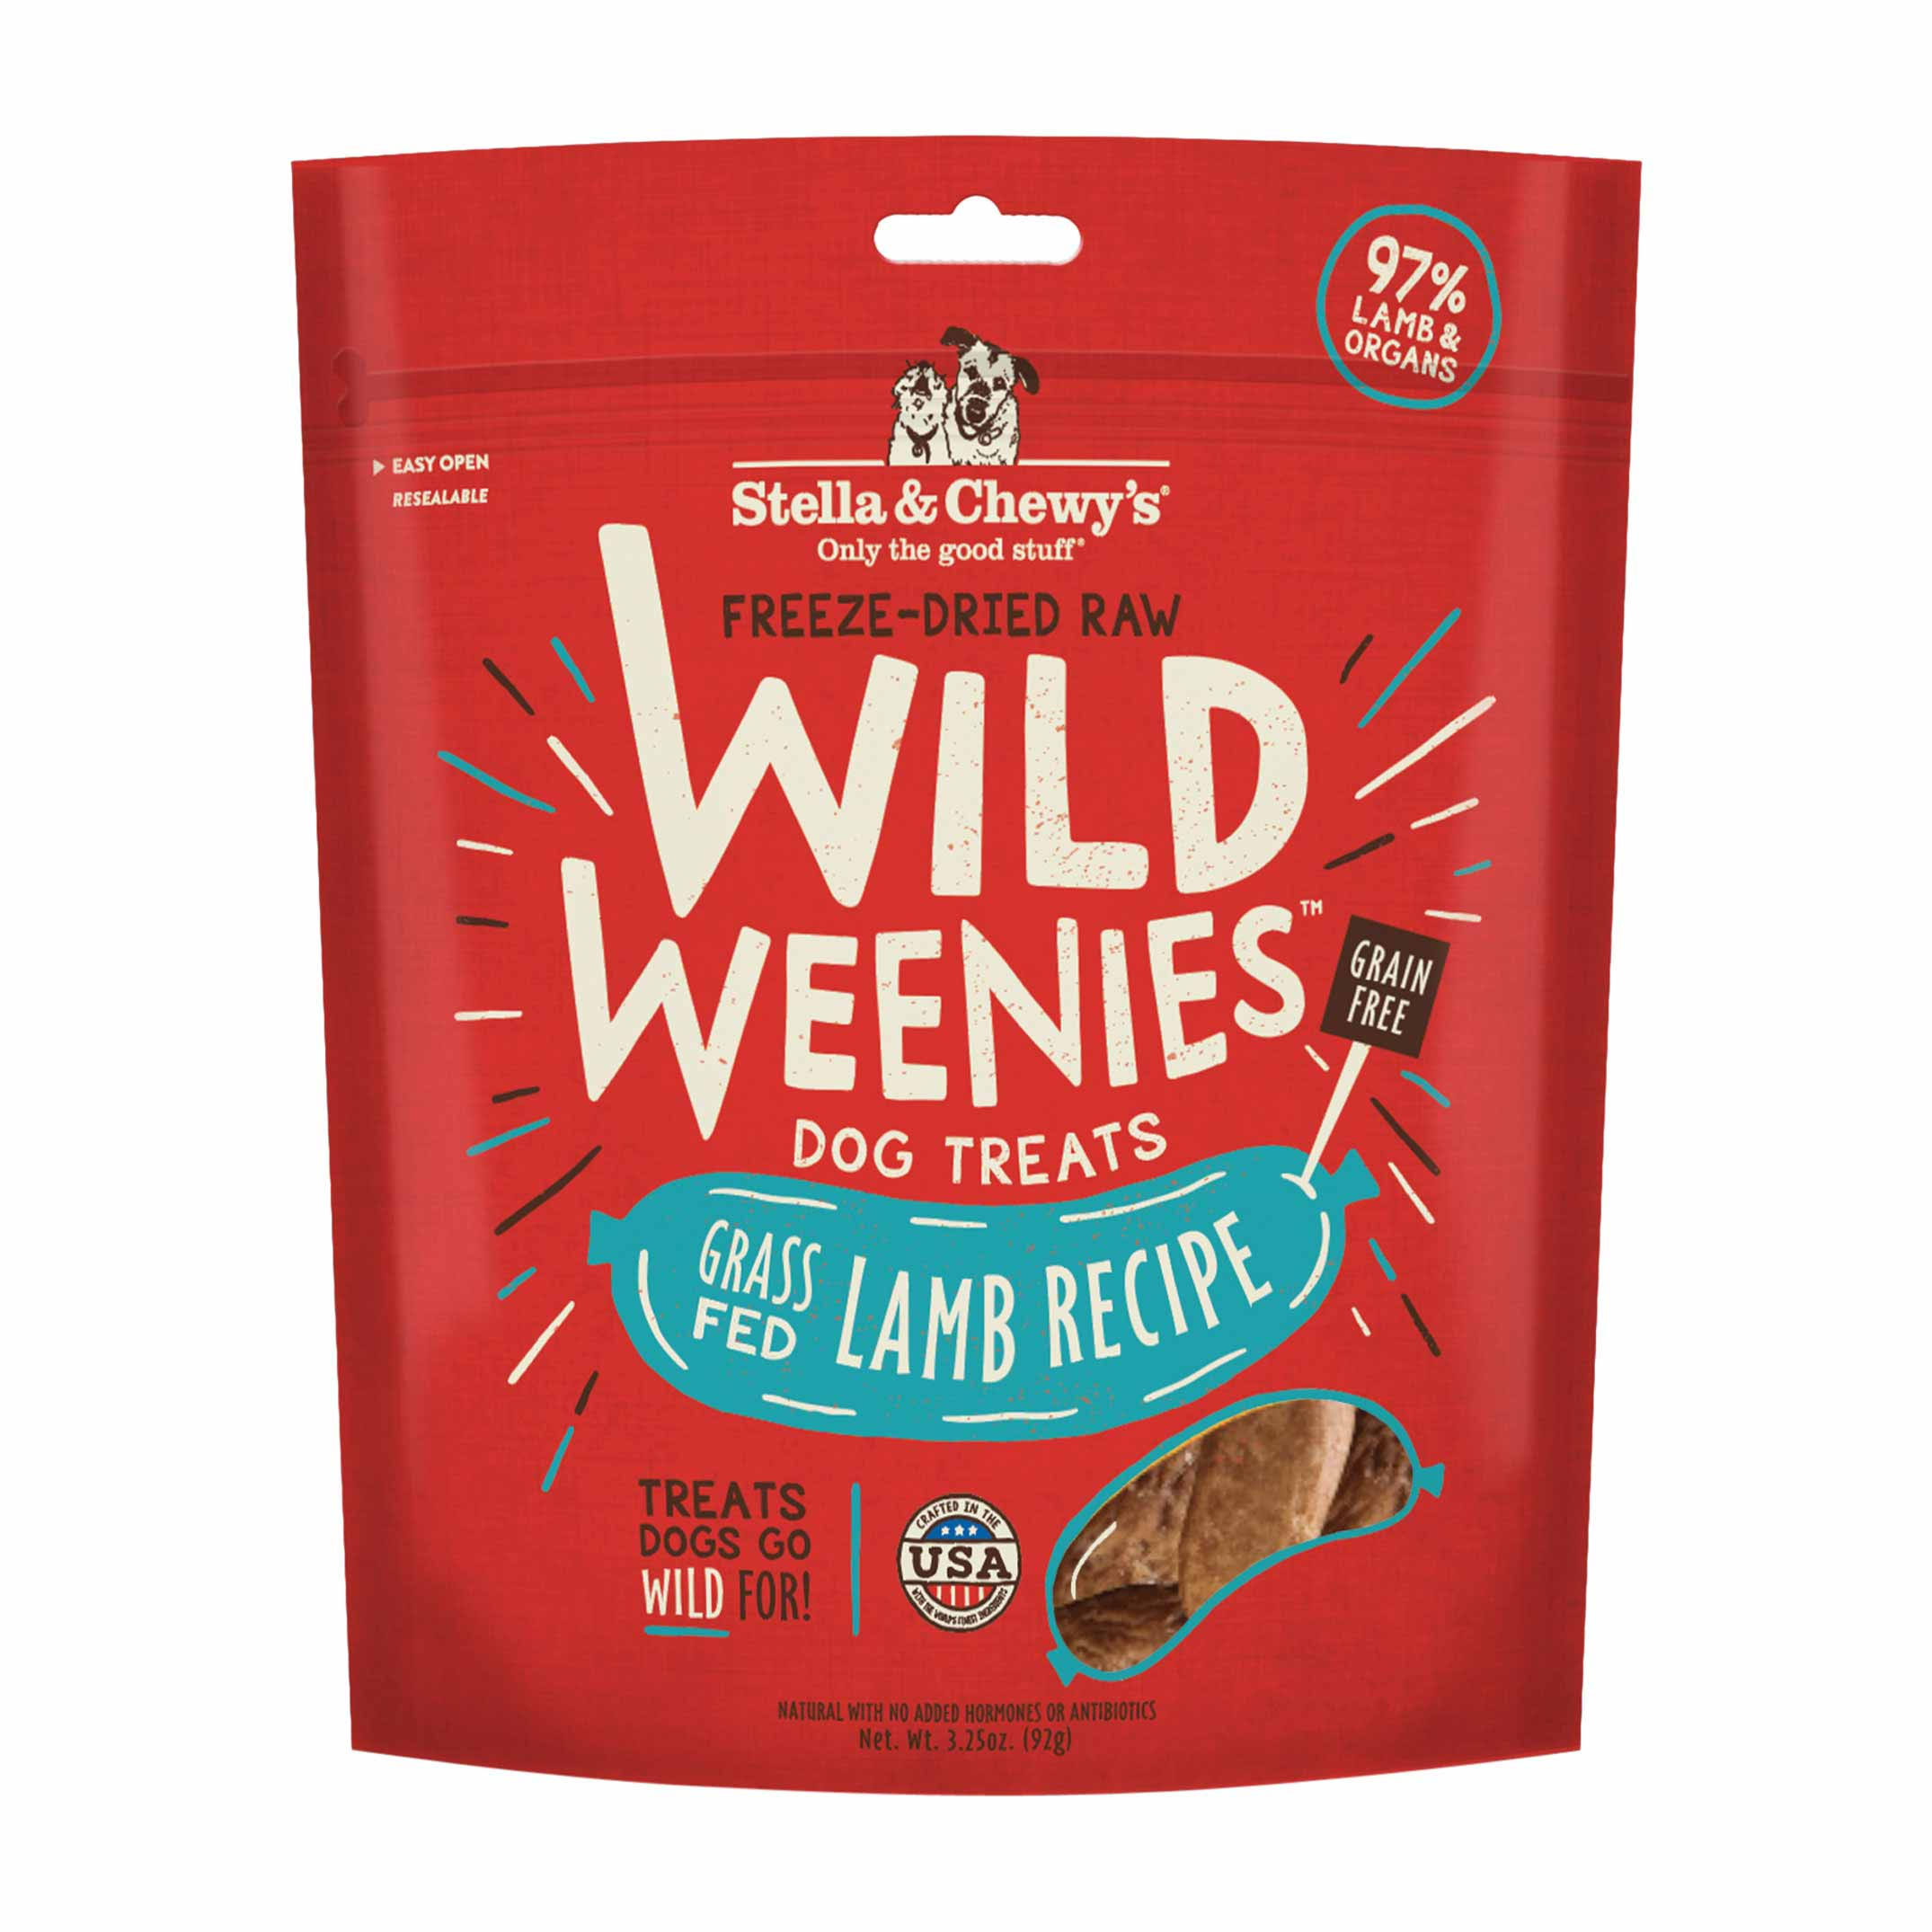 Stella & Chewy's Wild Weenies Freeze-Dried Raw Dog Treats - Lamb - 3.25 oz.